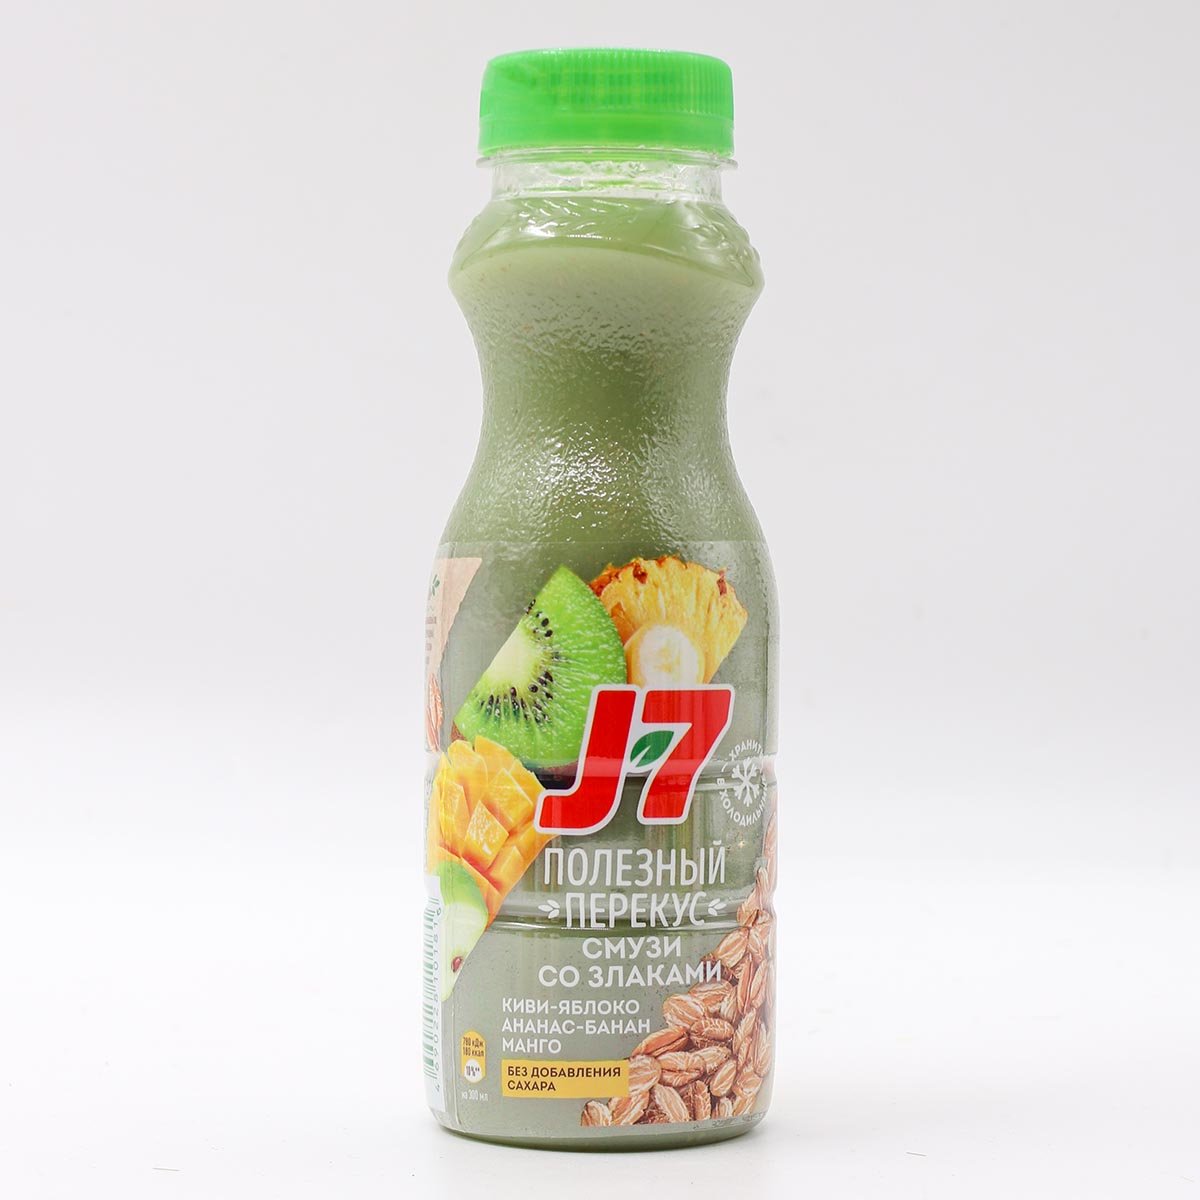 Питьевая продукция. Питьевые продукты. Продукт питьевой j7 полезный завтрак из киви банана.